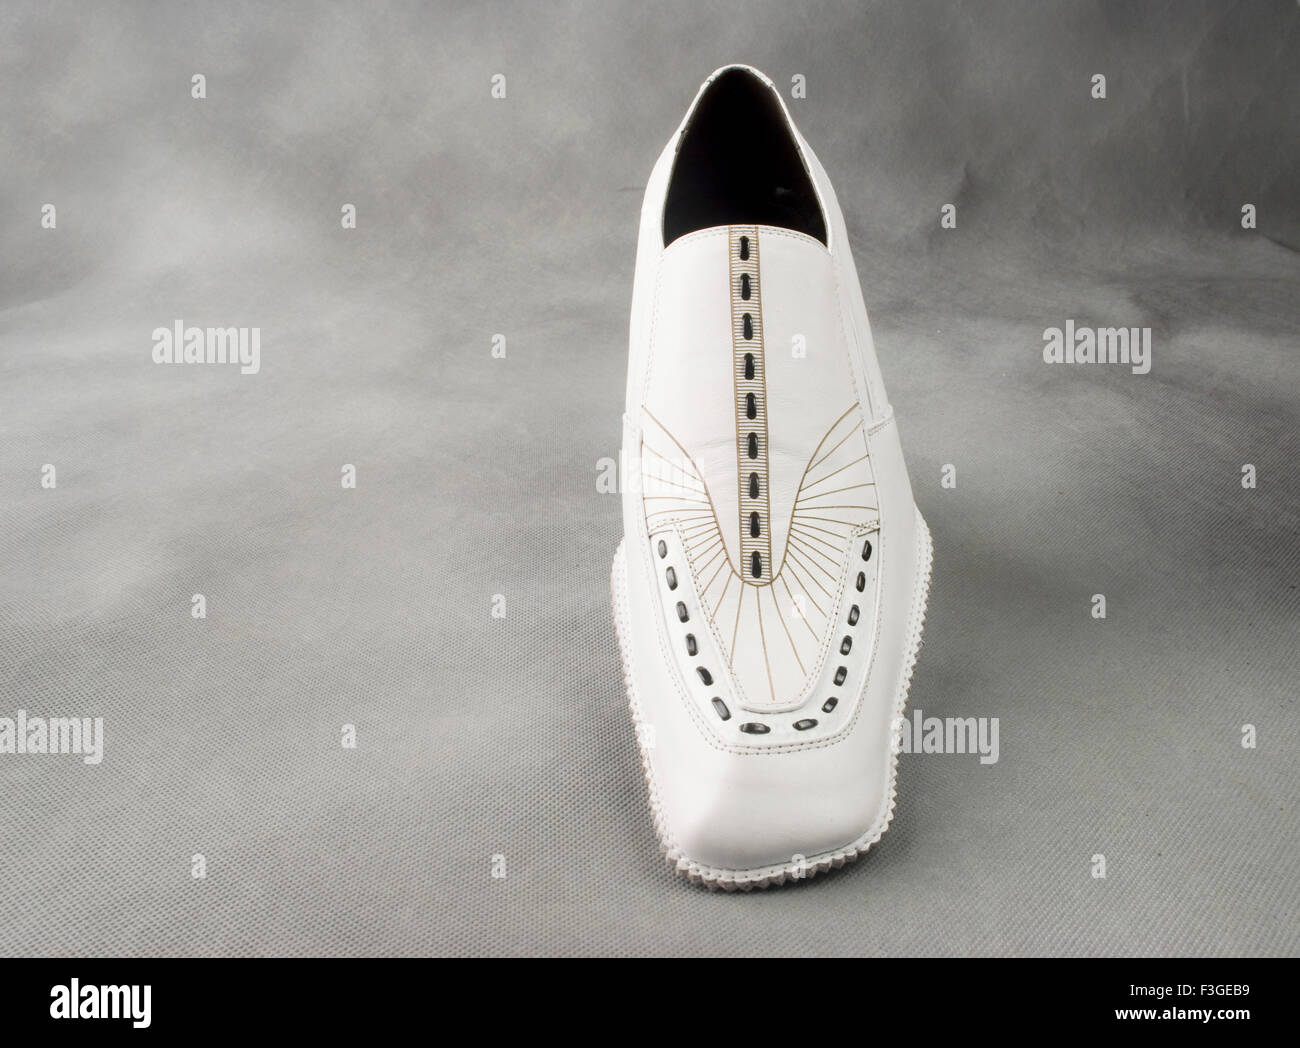 Chaussures en cuir blanc sur fond gris MR Banque D'Images